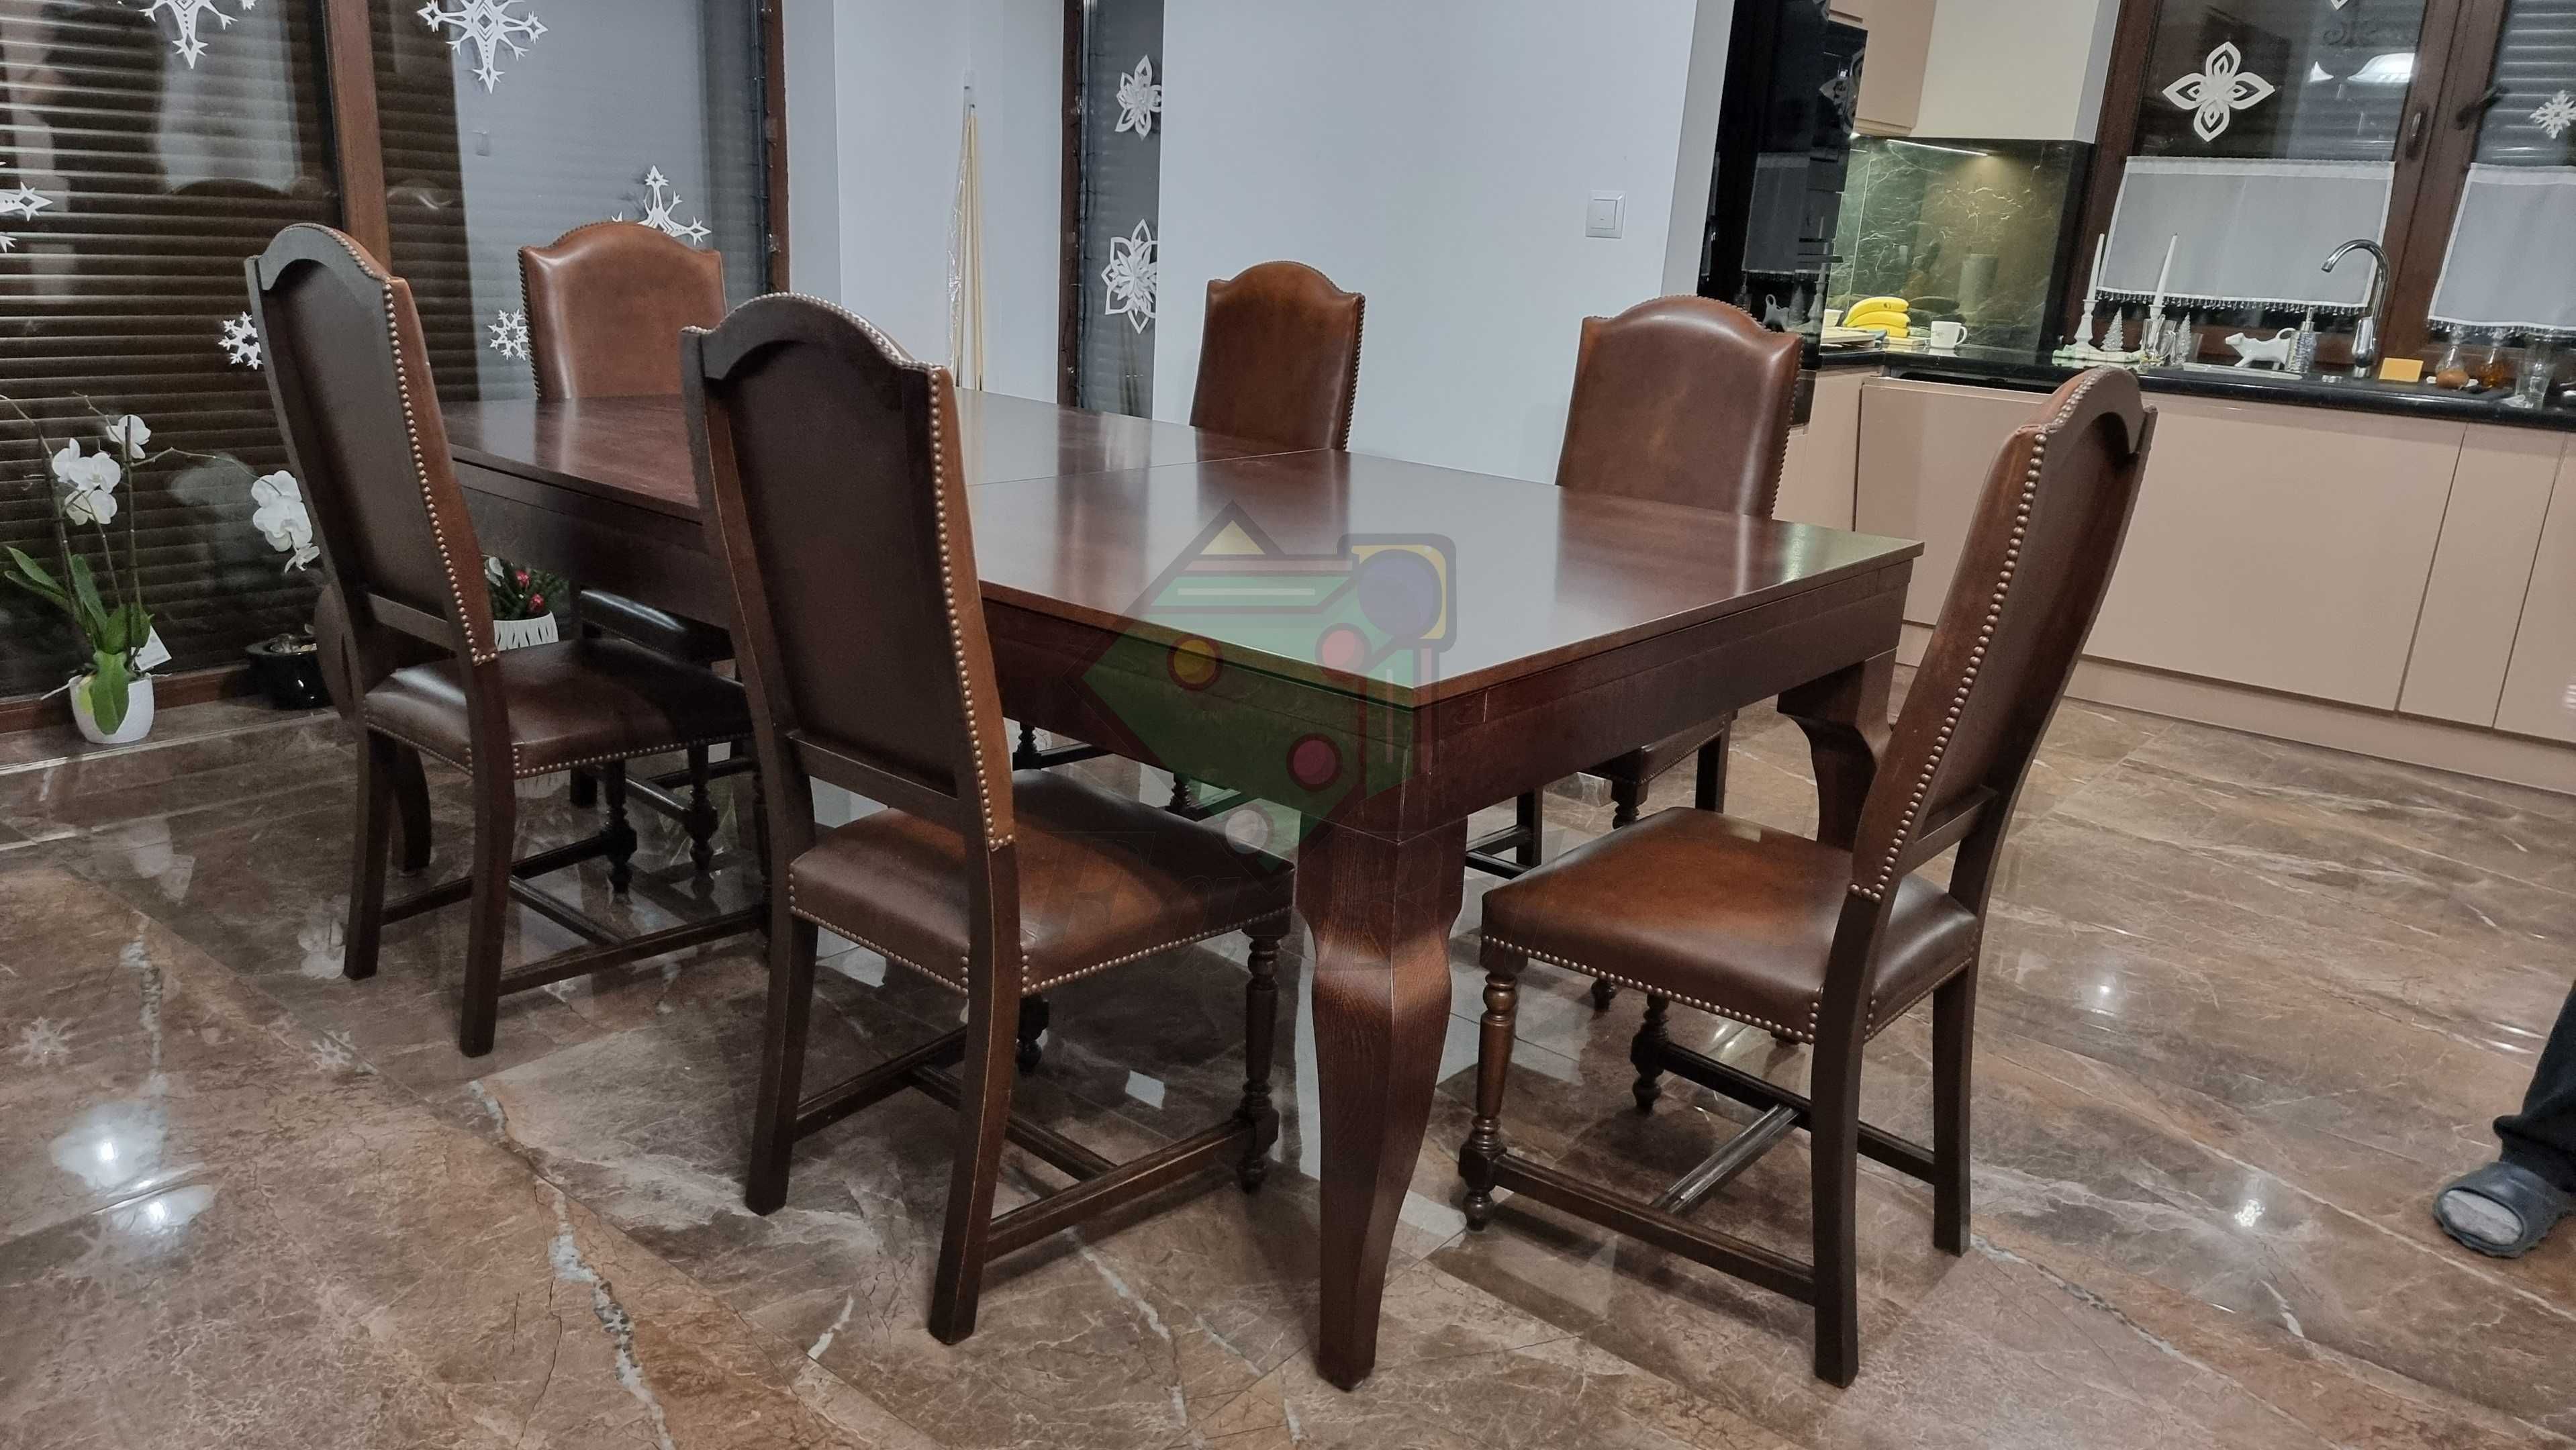 Stoły i krzesła - całkowite wyposażenie salonu, sali konferencyjnej